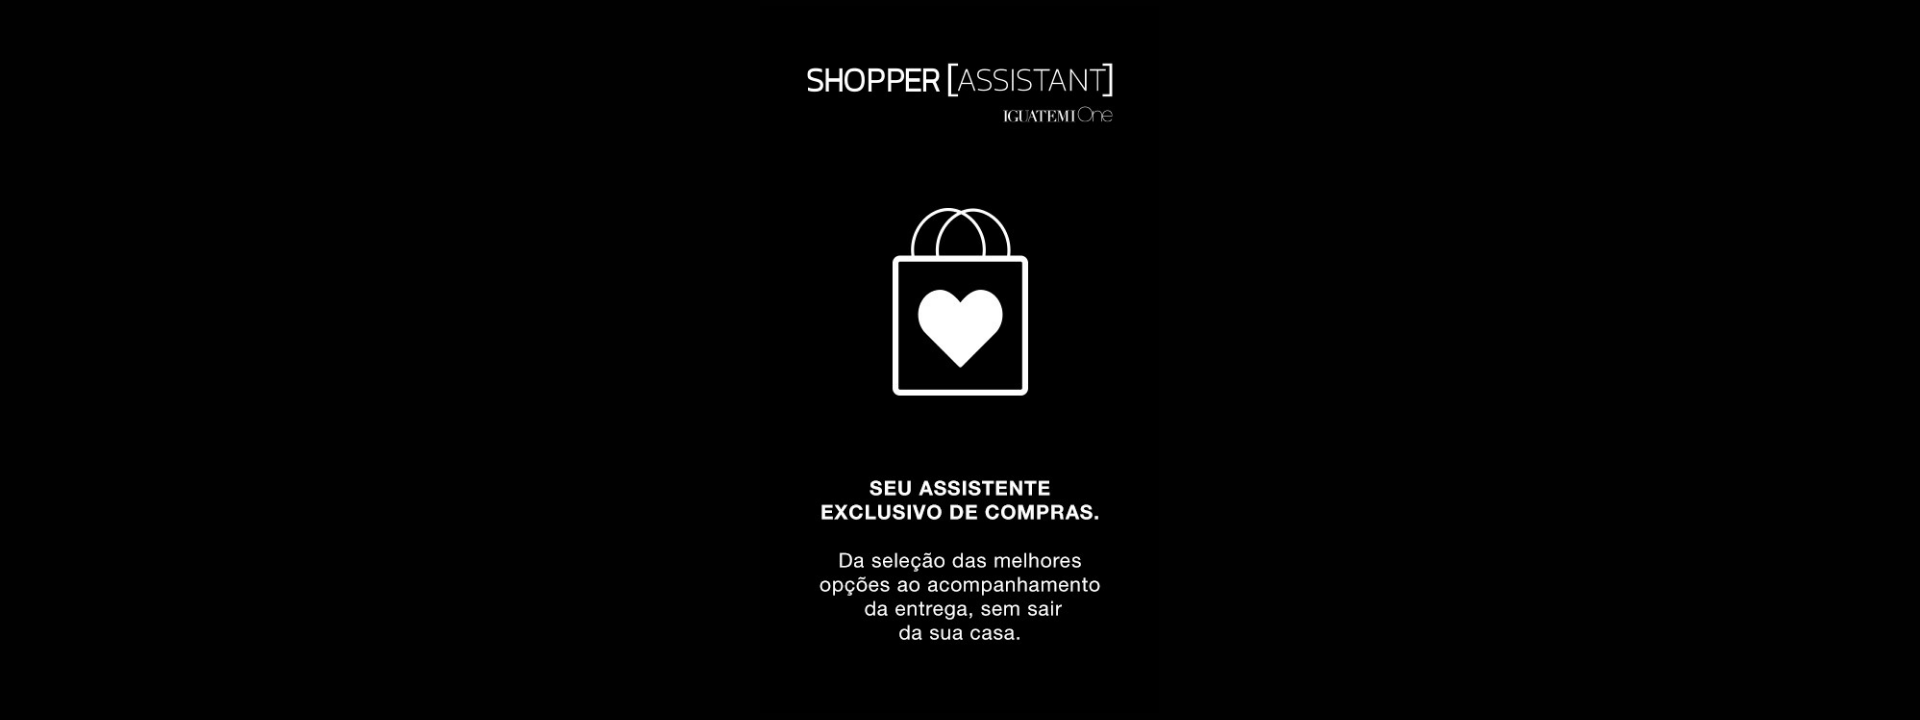 Shopper Assistant